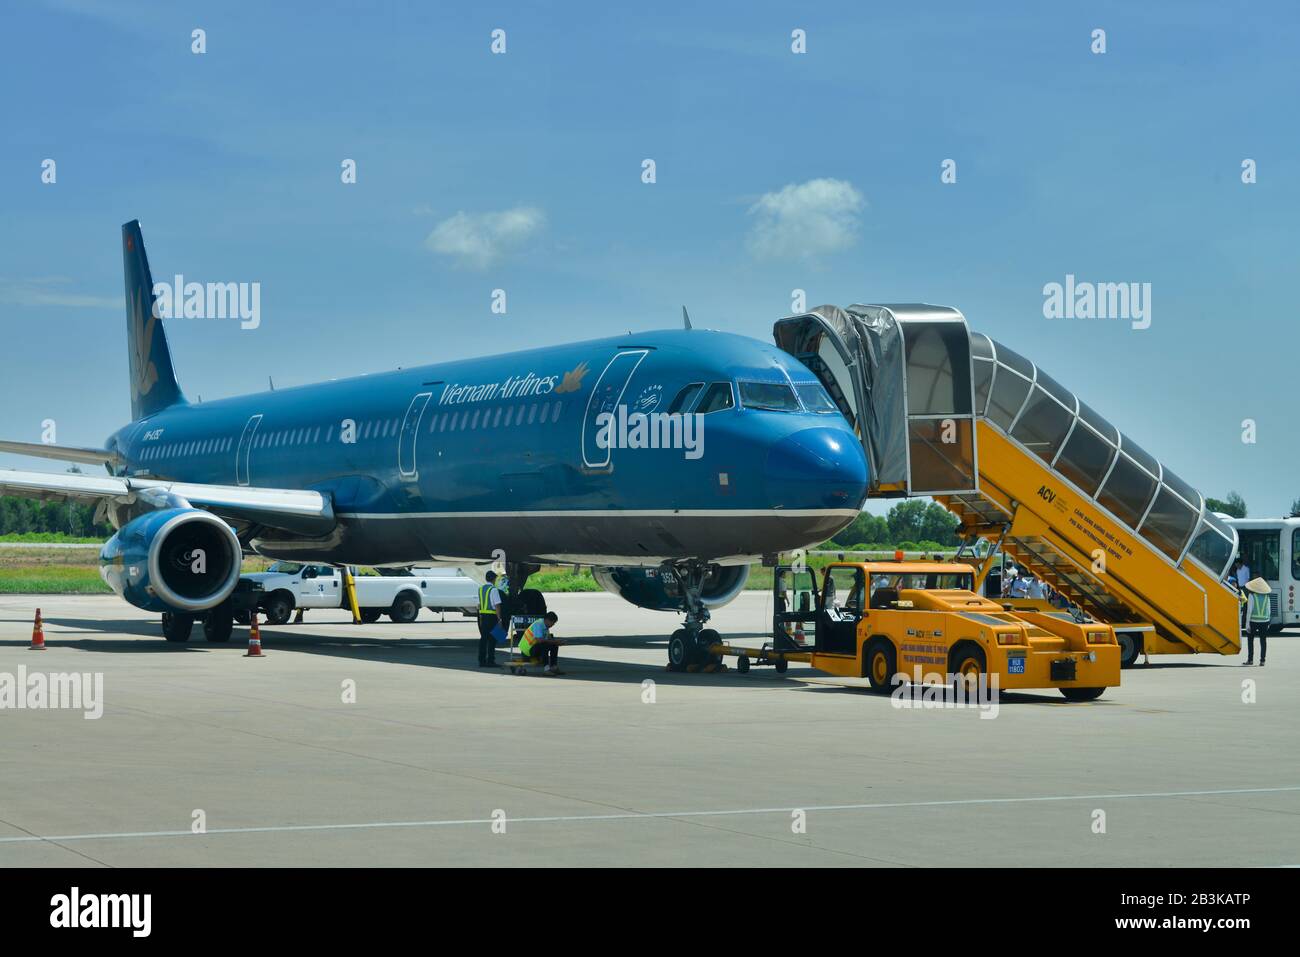 Flugzeug, Vietnam Airlines, Flughafen, Hue, Vietnam Stock Photo